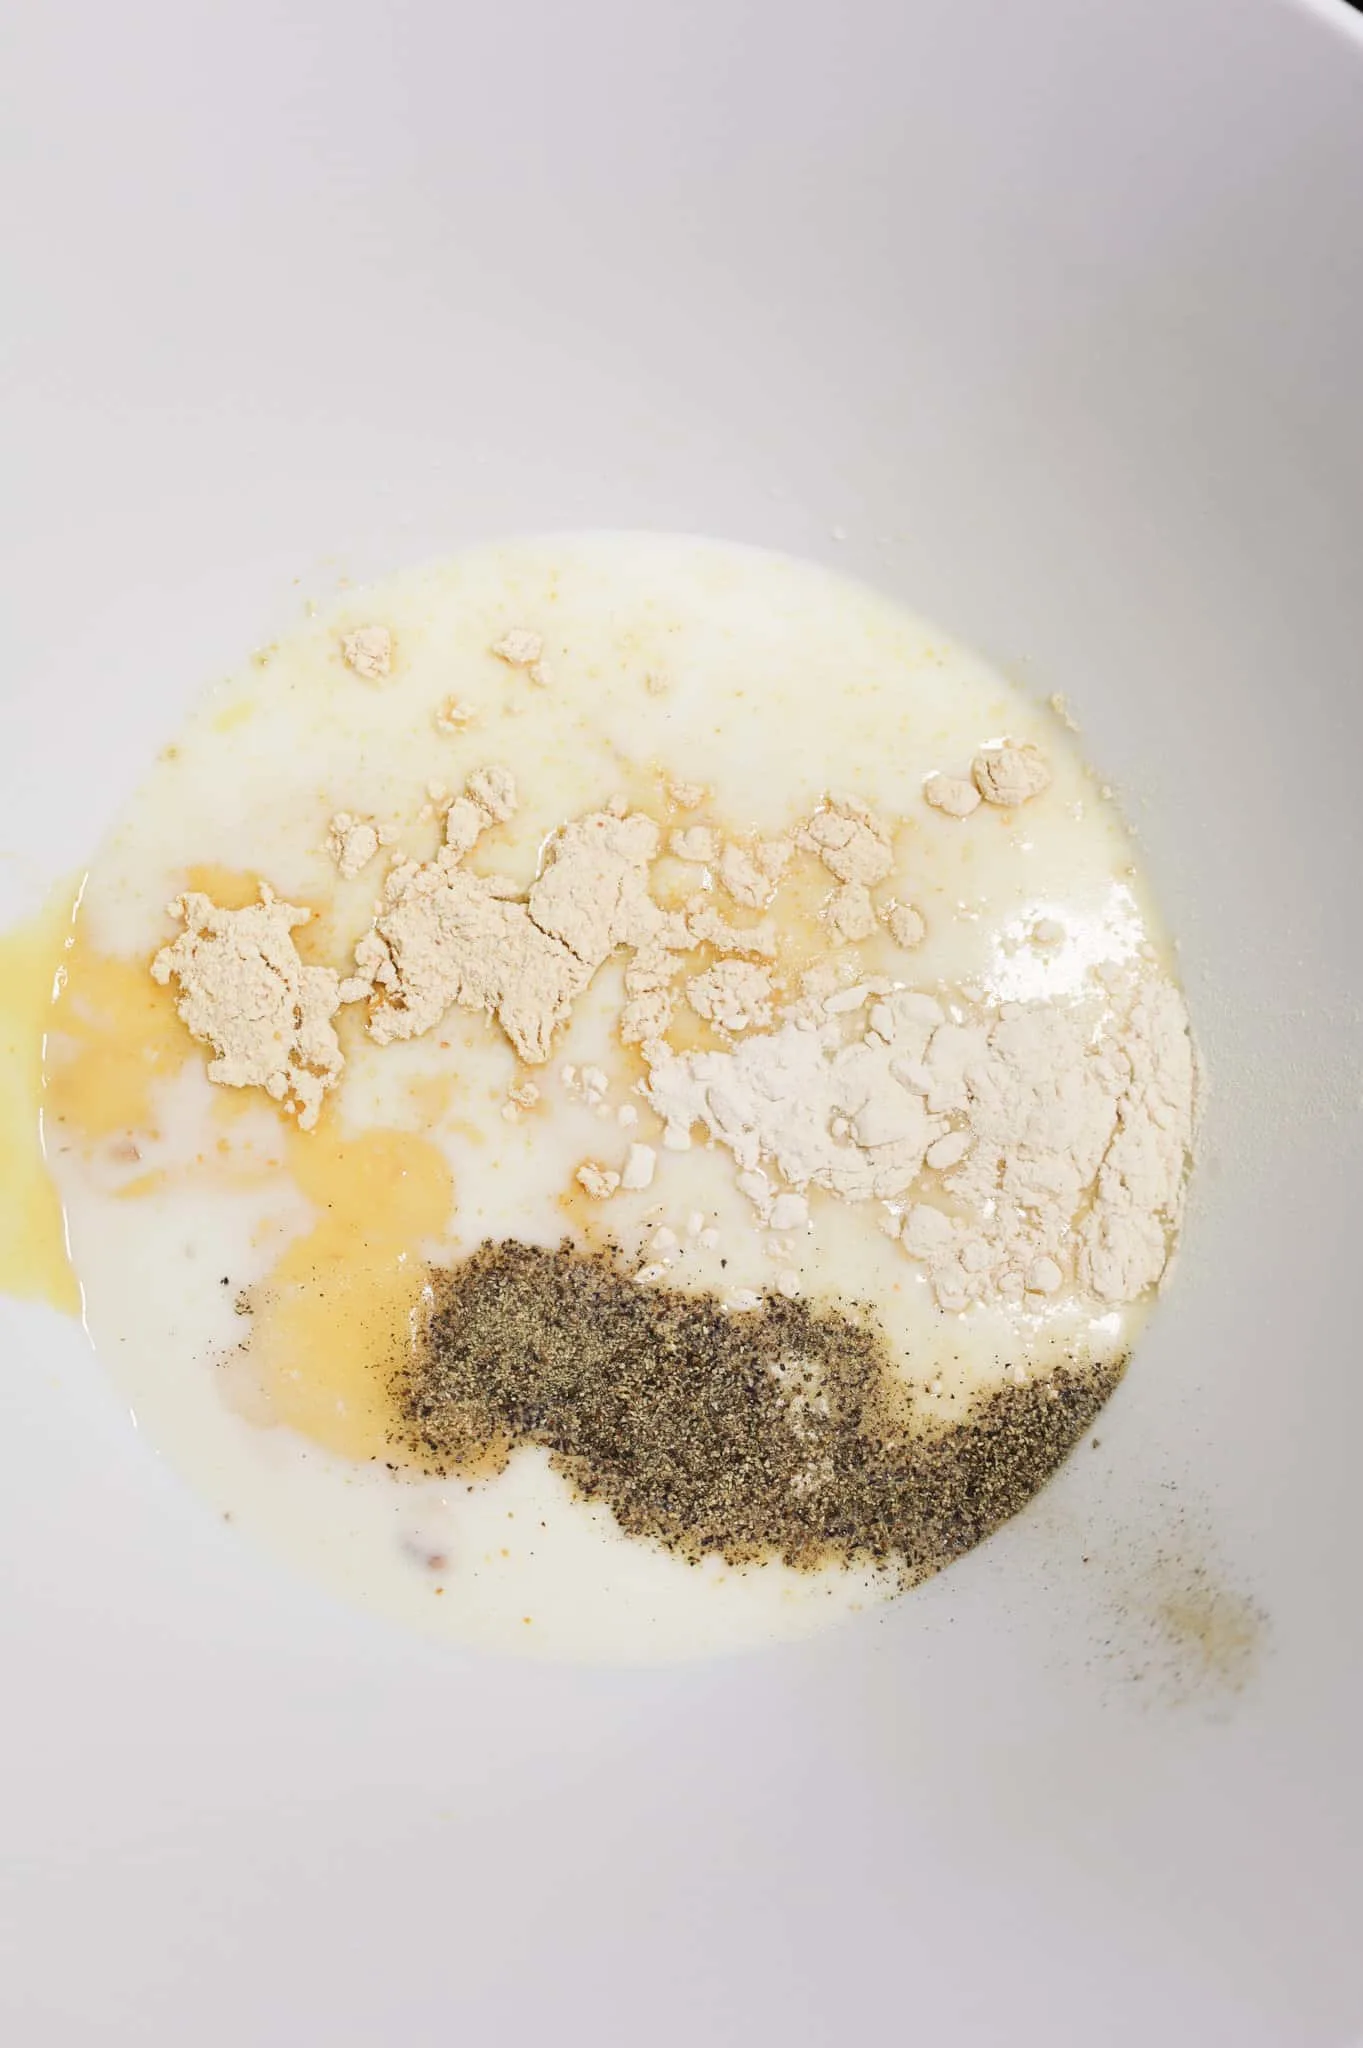 milk, salt, pepper, garlic powder and onion powder in a mixing bowl